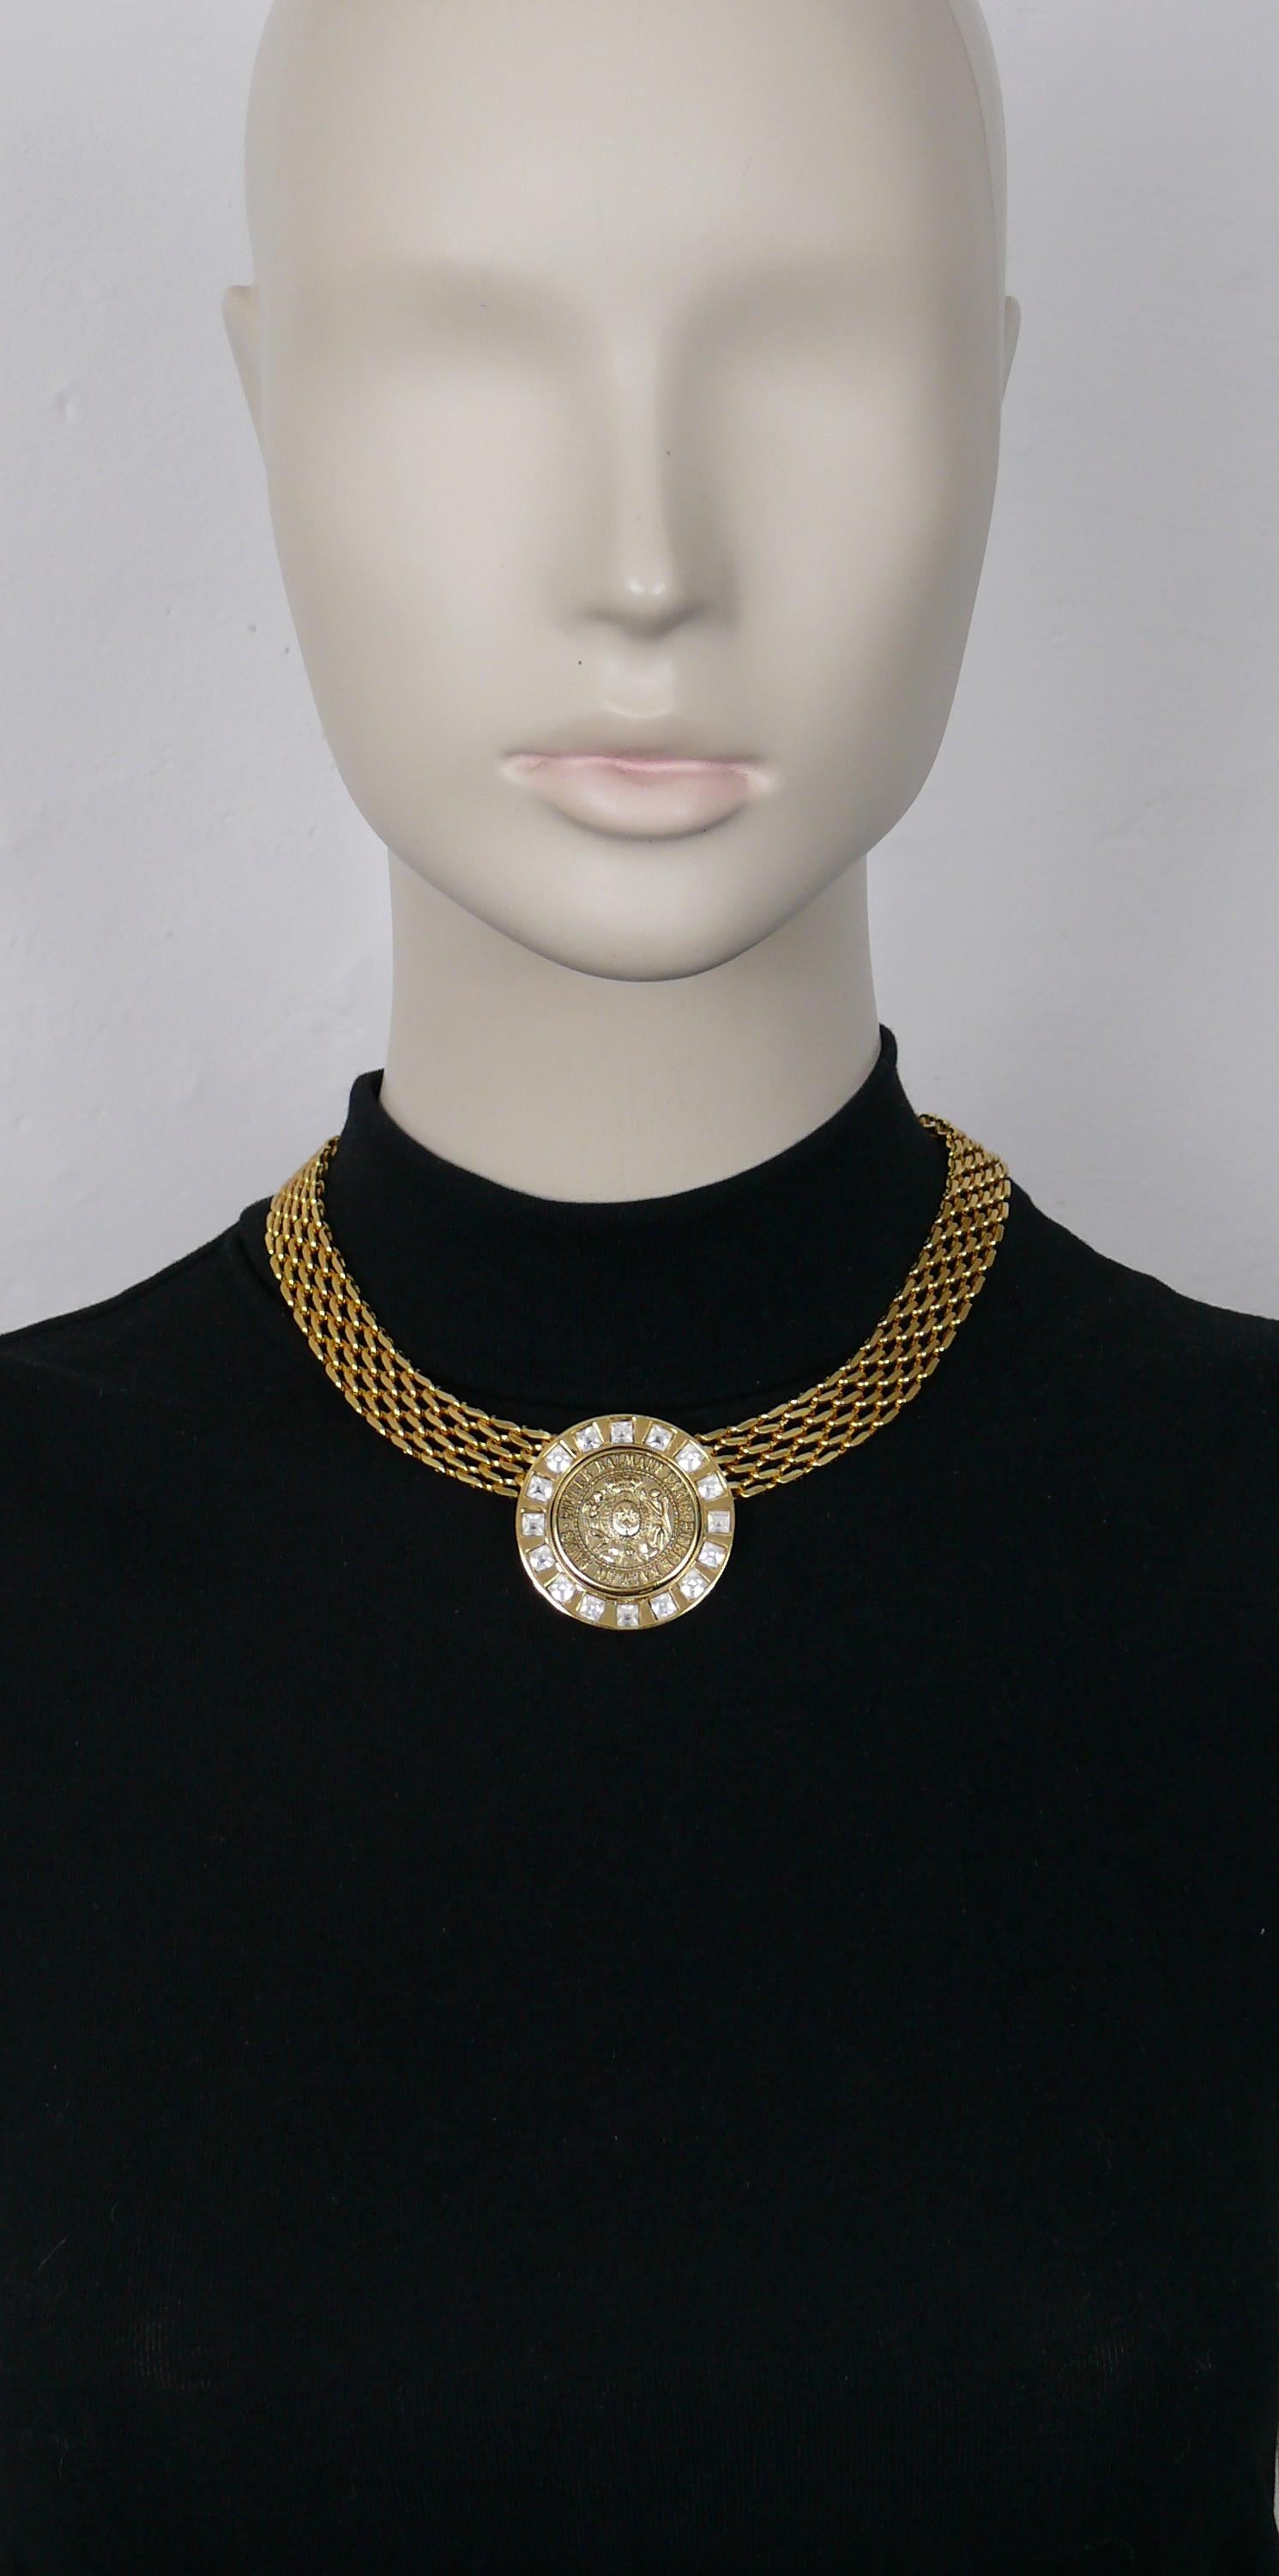 Goldfarbene Halskette von PIERRE BALMAIN mit einem PIERRE BALMAIN-Medaillon in der Mitte, das mit klaren Kristallen verziert ist.

Sichere Schließe.

Geprägt PB Paris.

Ungefähre Maße: Länge ca. 42,5 cm (16,73 Zoll) / Breite der Kette ca. 1,3 cm